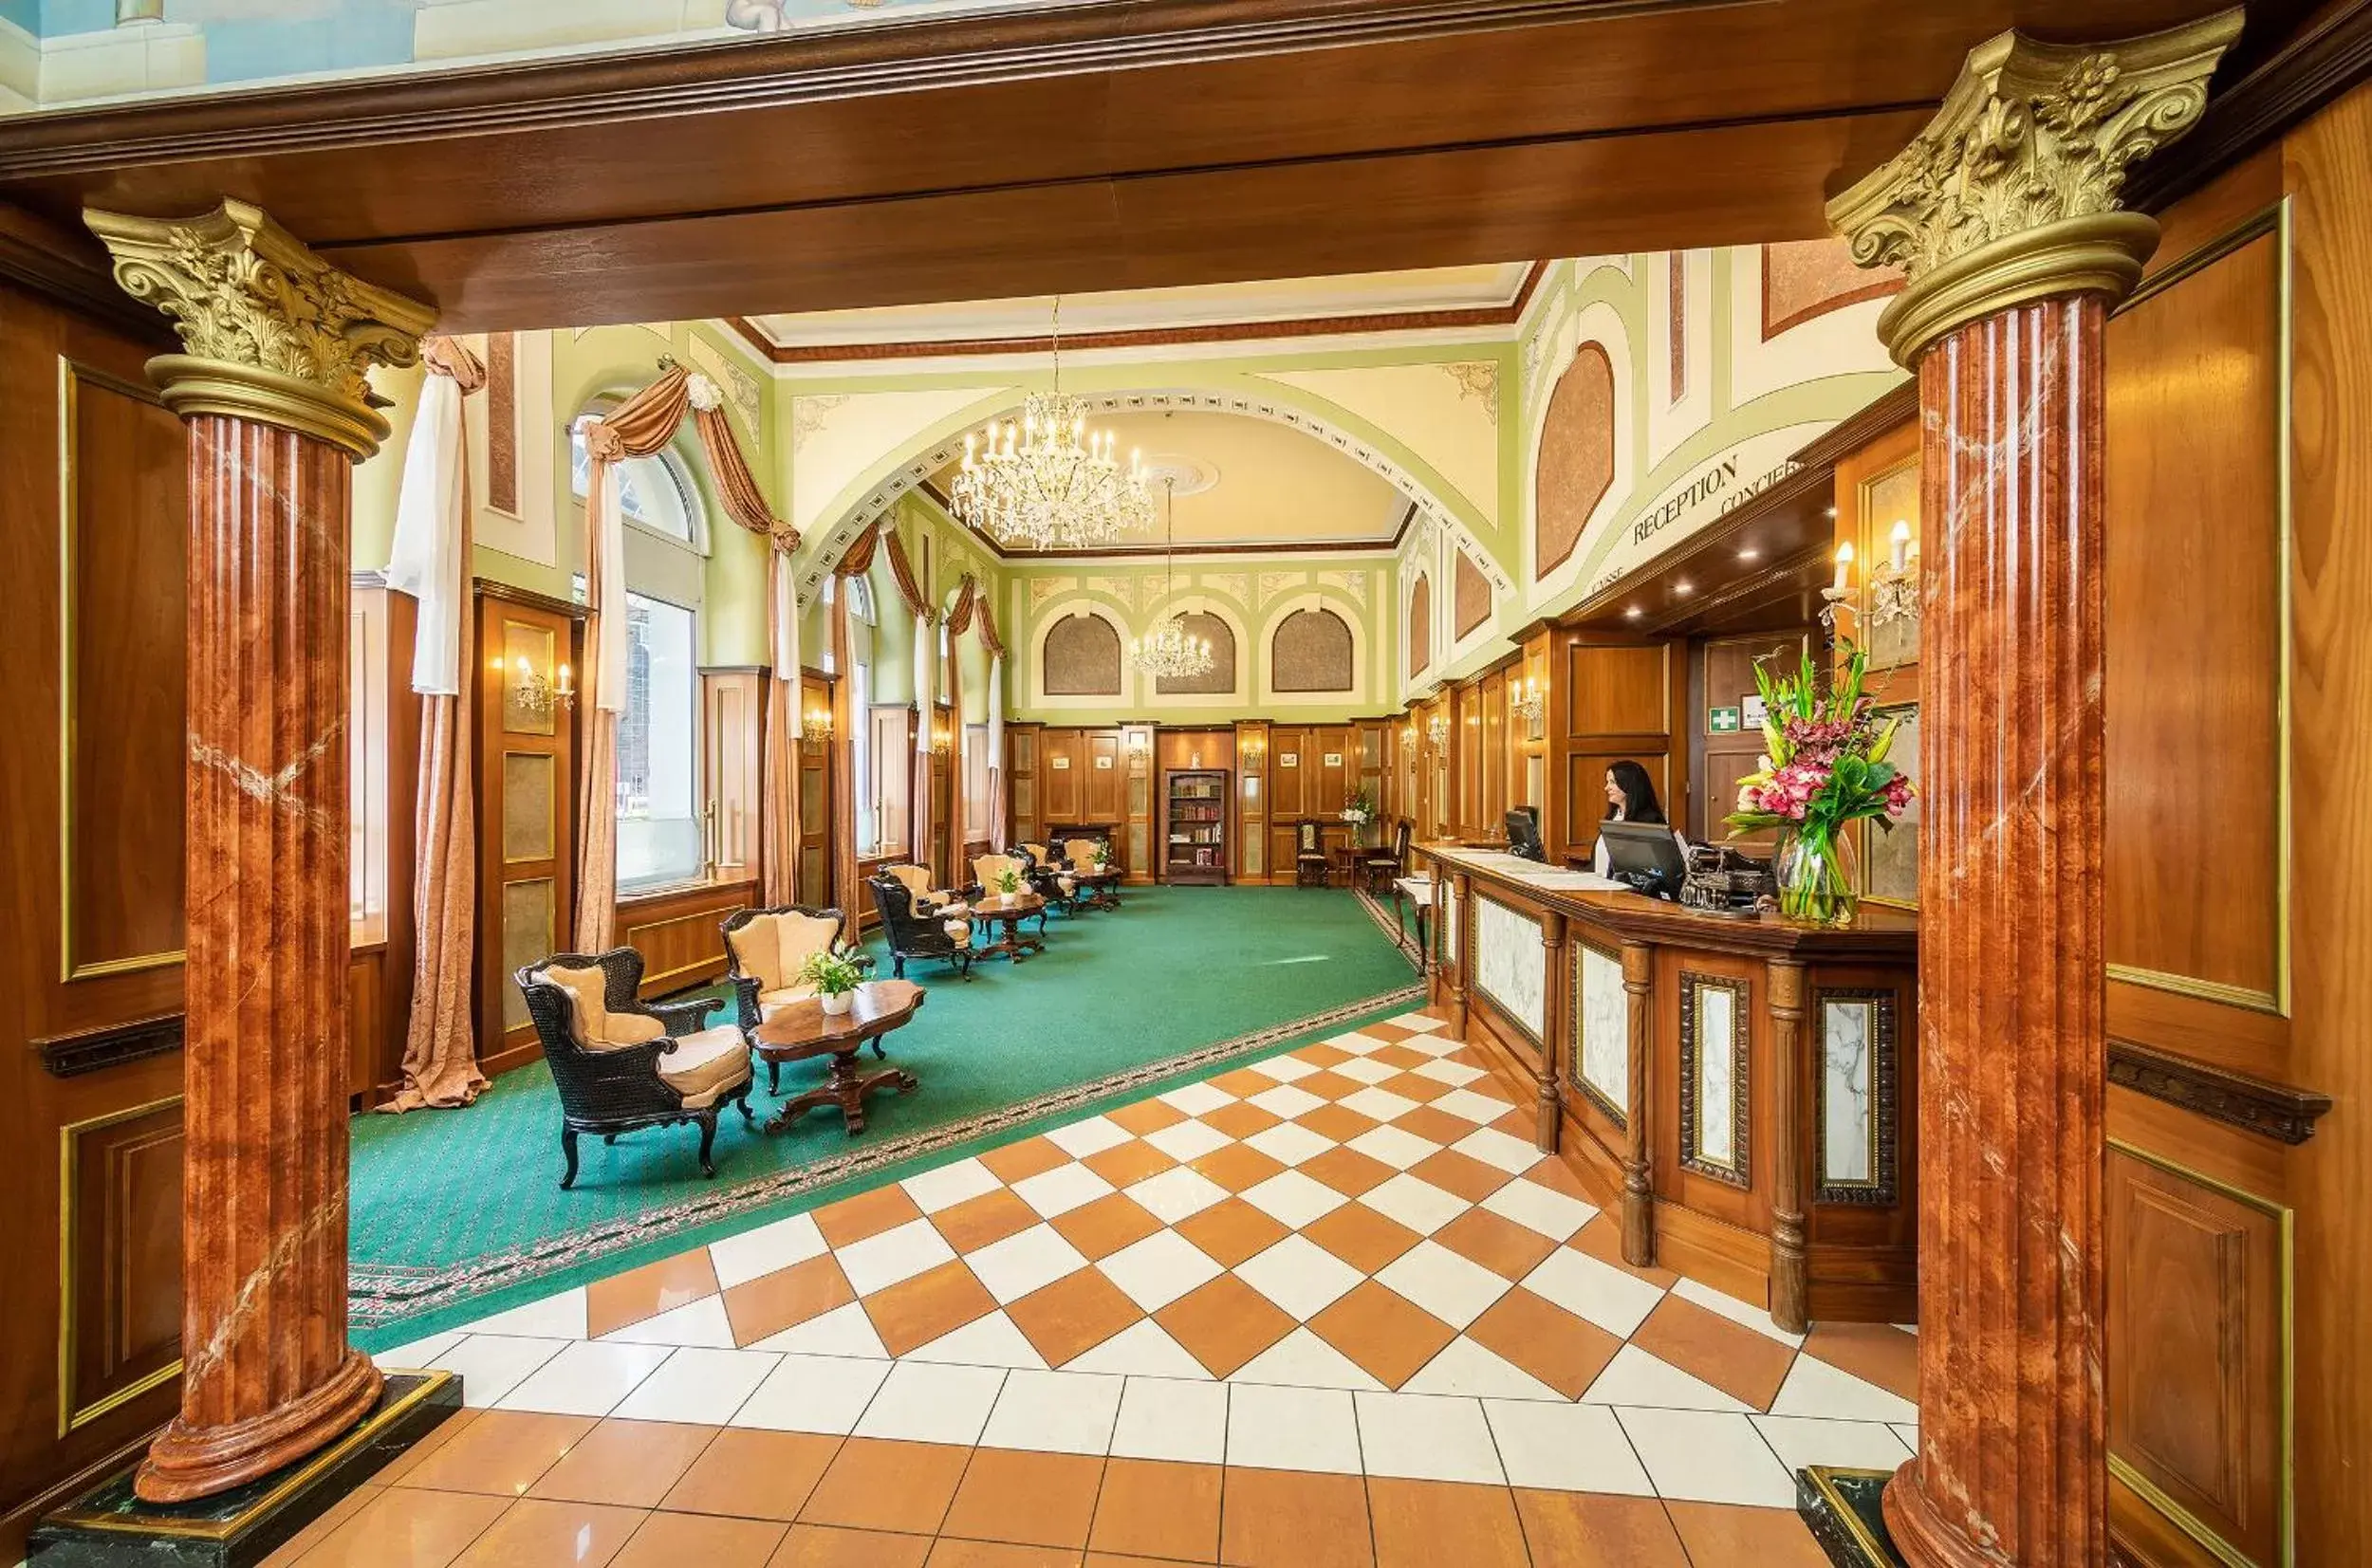 Lobby or reception in Hotel Bellevue Wien